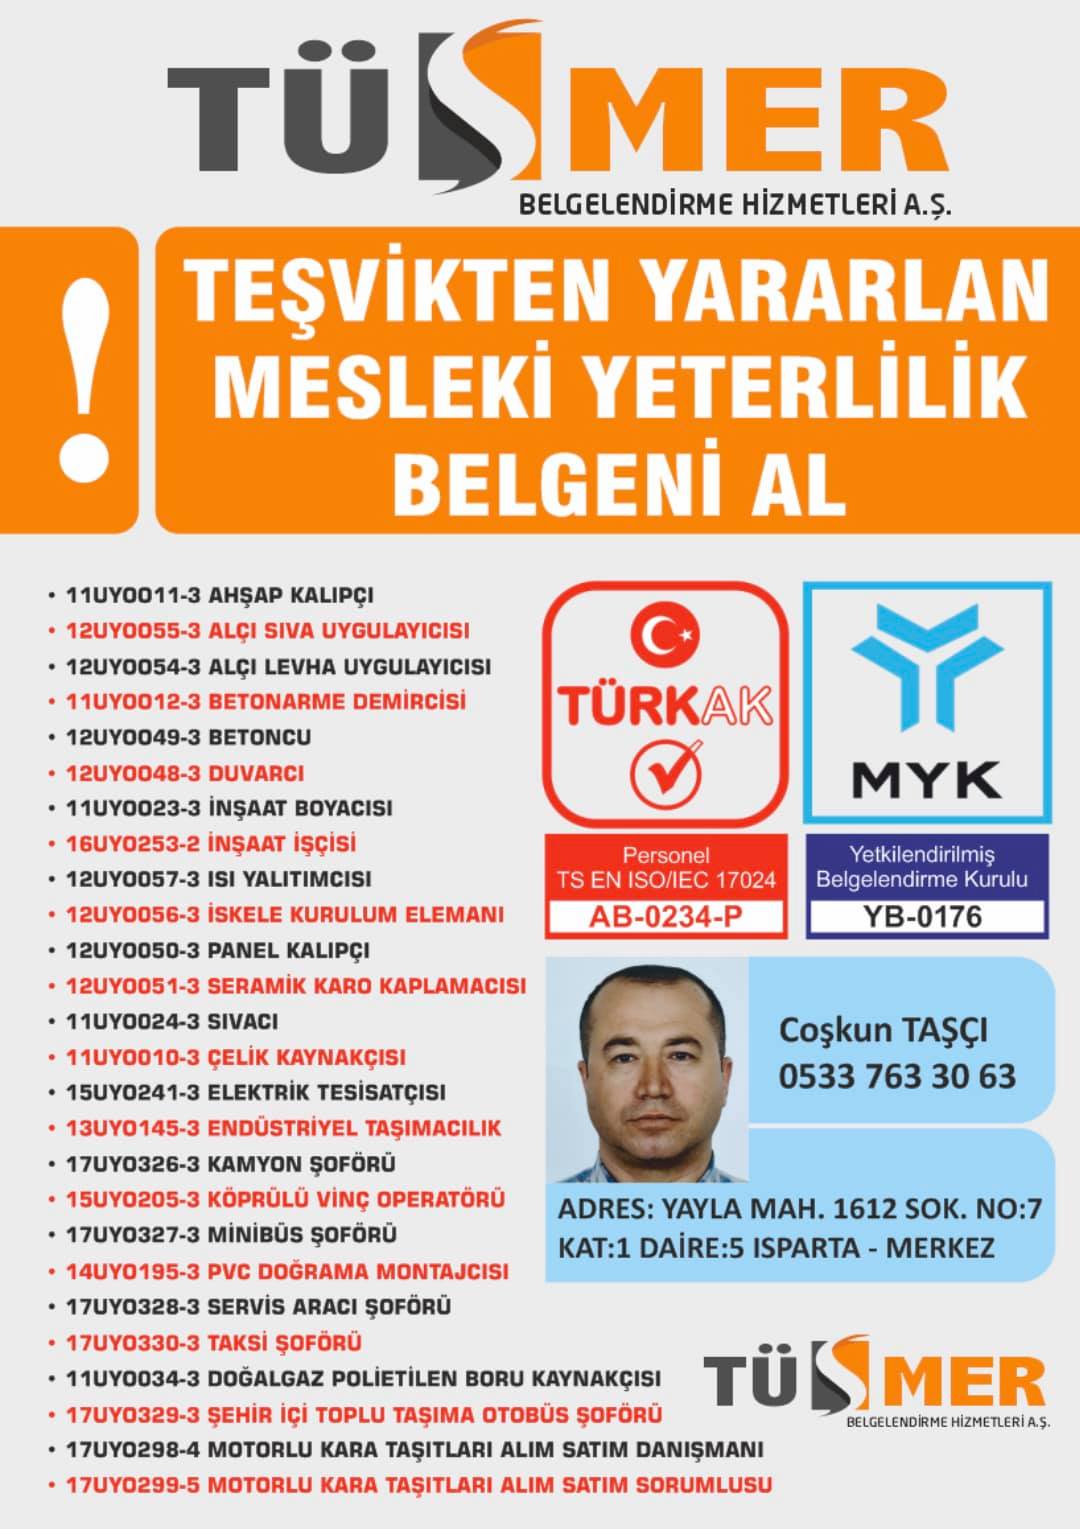 MYK MESLEKİ YETERLİLİK BELGESİ AşıkveyselAtaşehir İstanbul